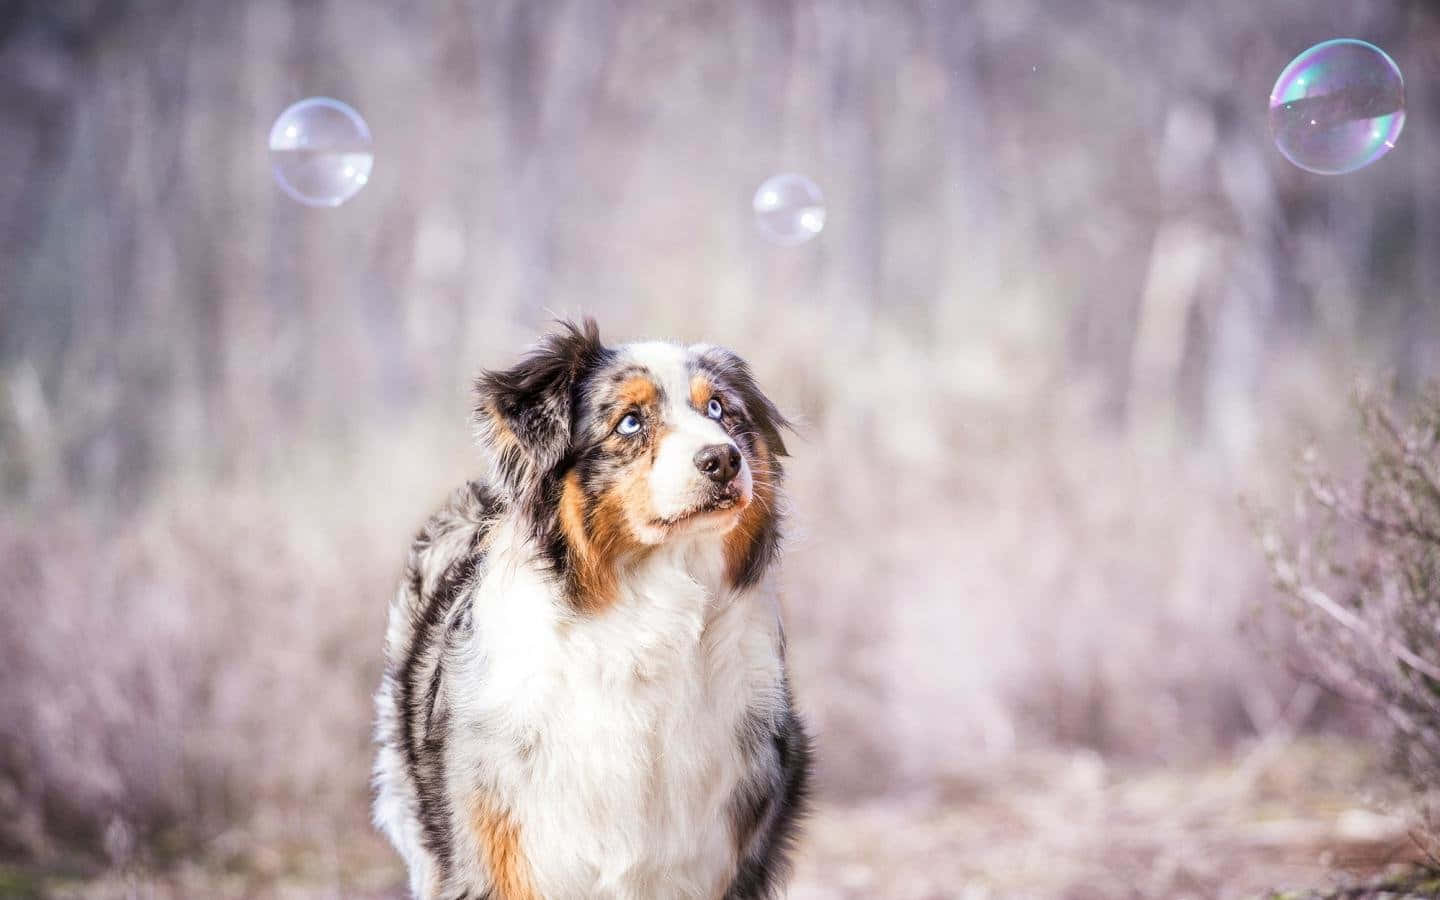 Imagenlinda De Un Perro Pastor Australiano Con Burbujas